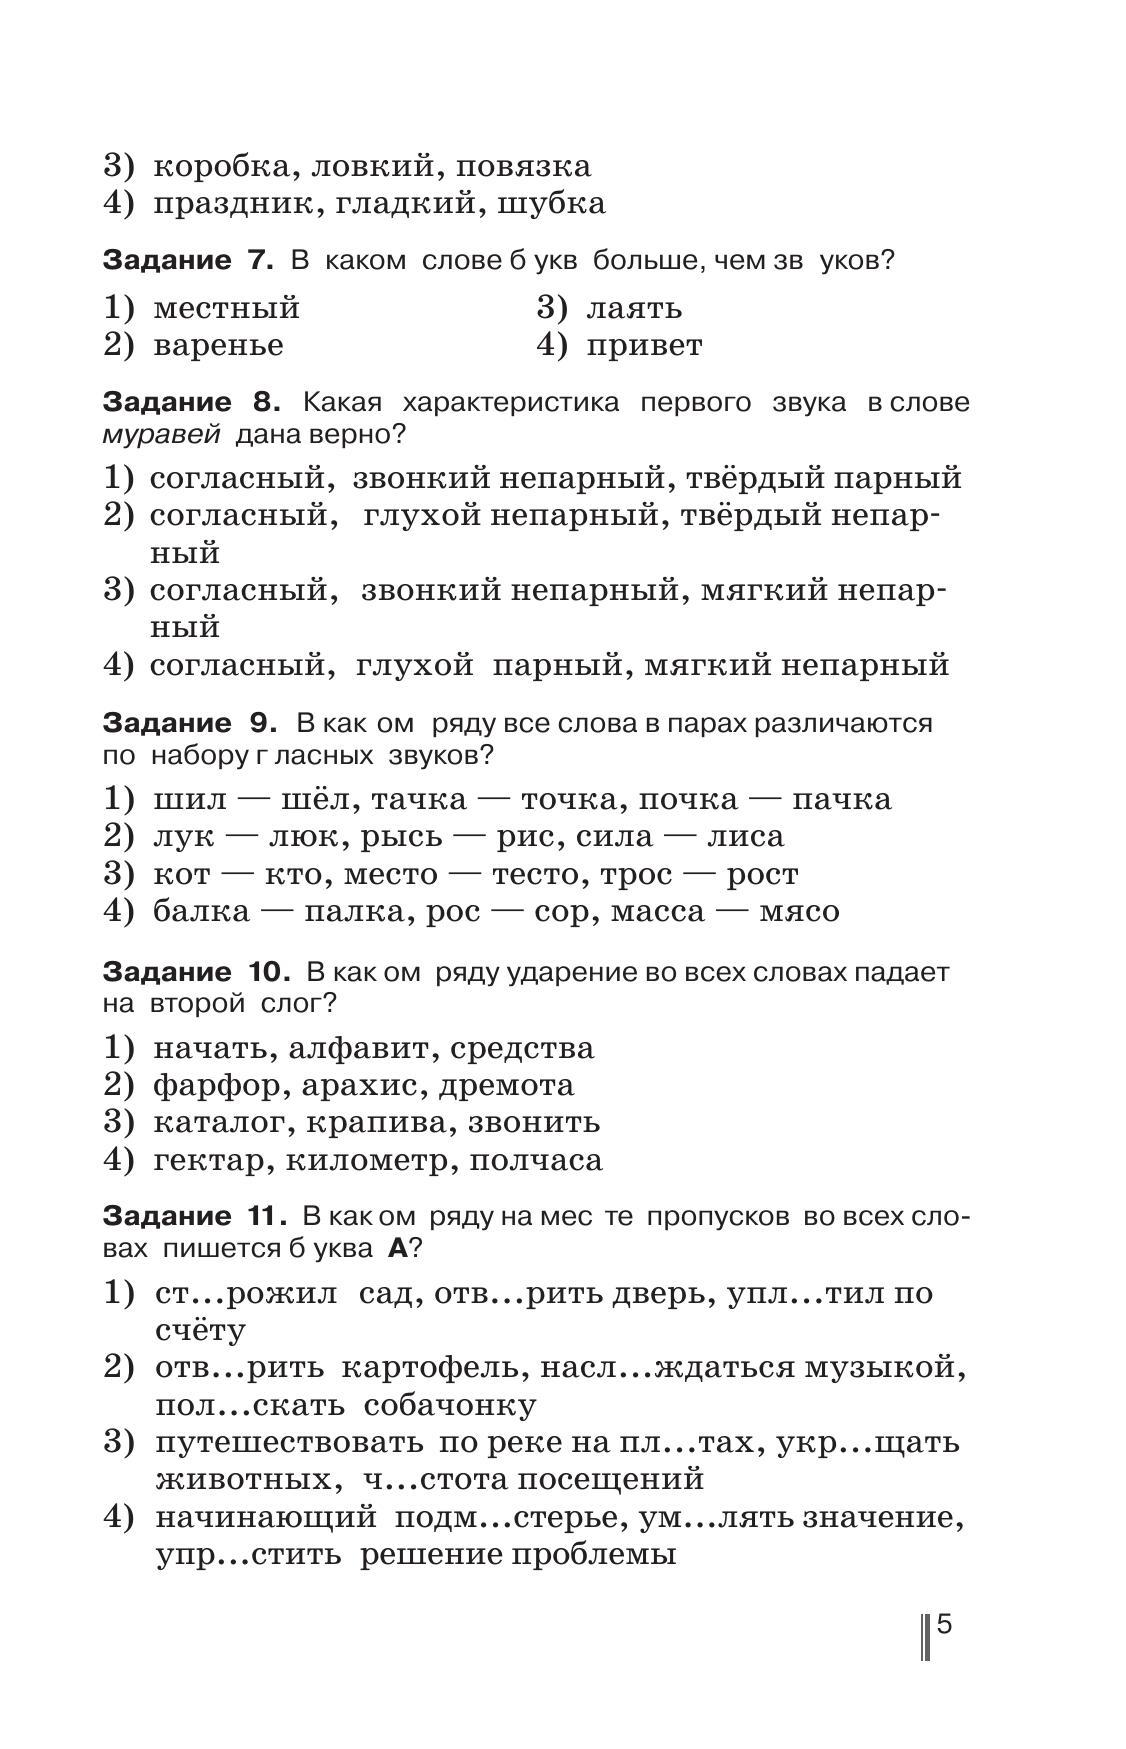 Русский язык. Готовимся к ГИА. Тесты, творческие работы, проекты. 5 класс 4